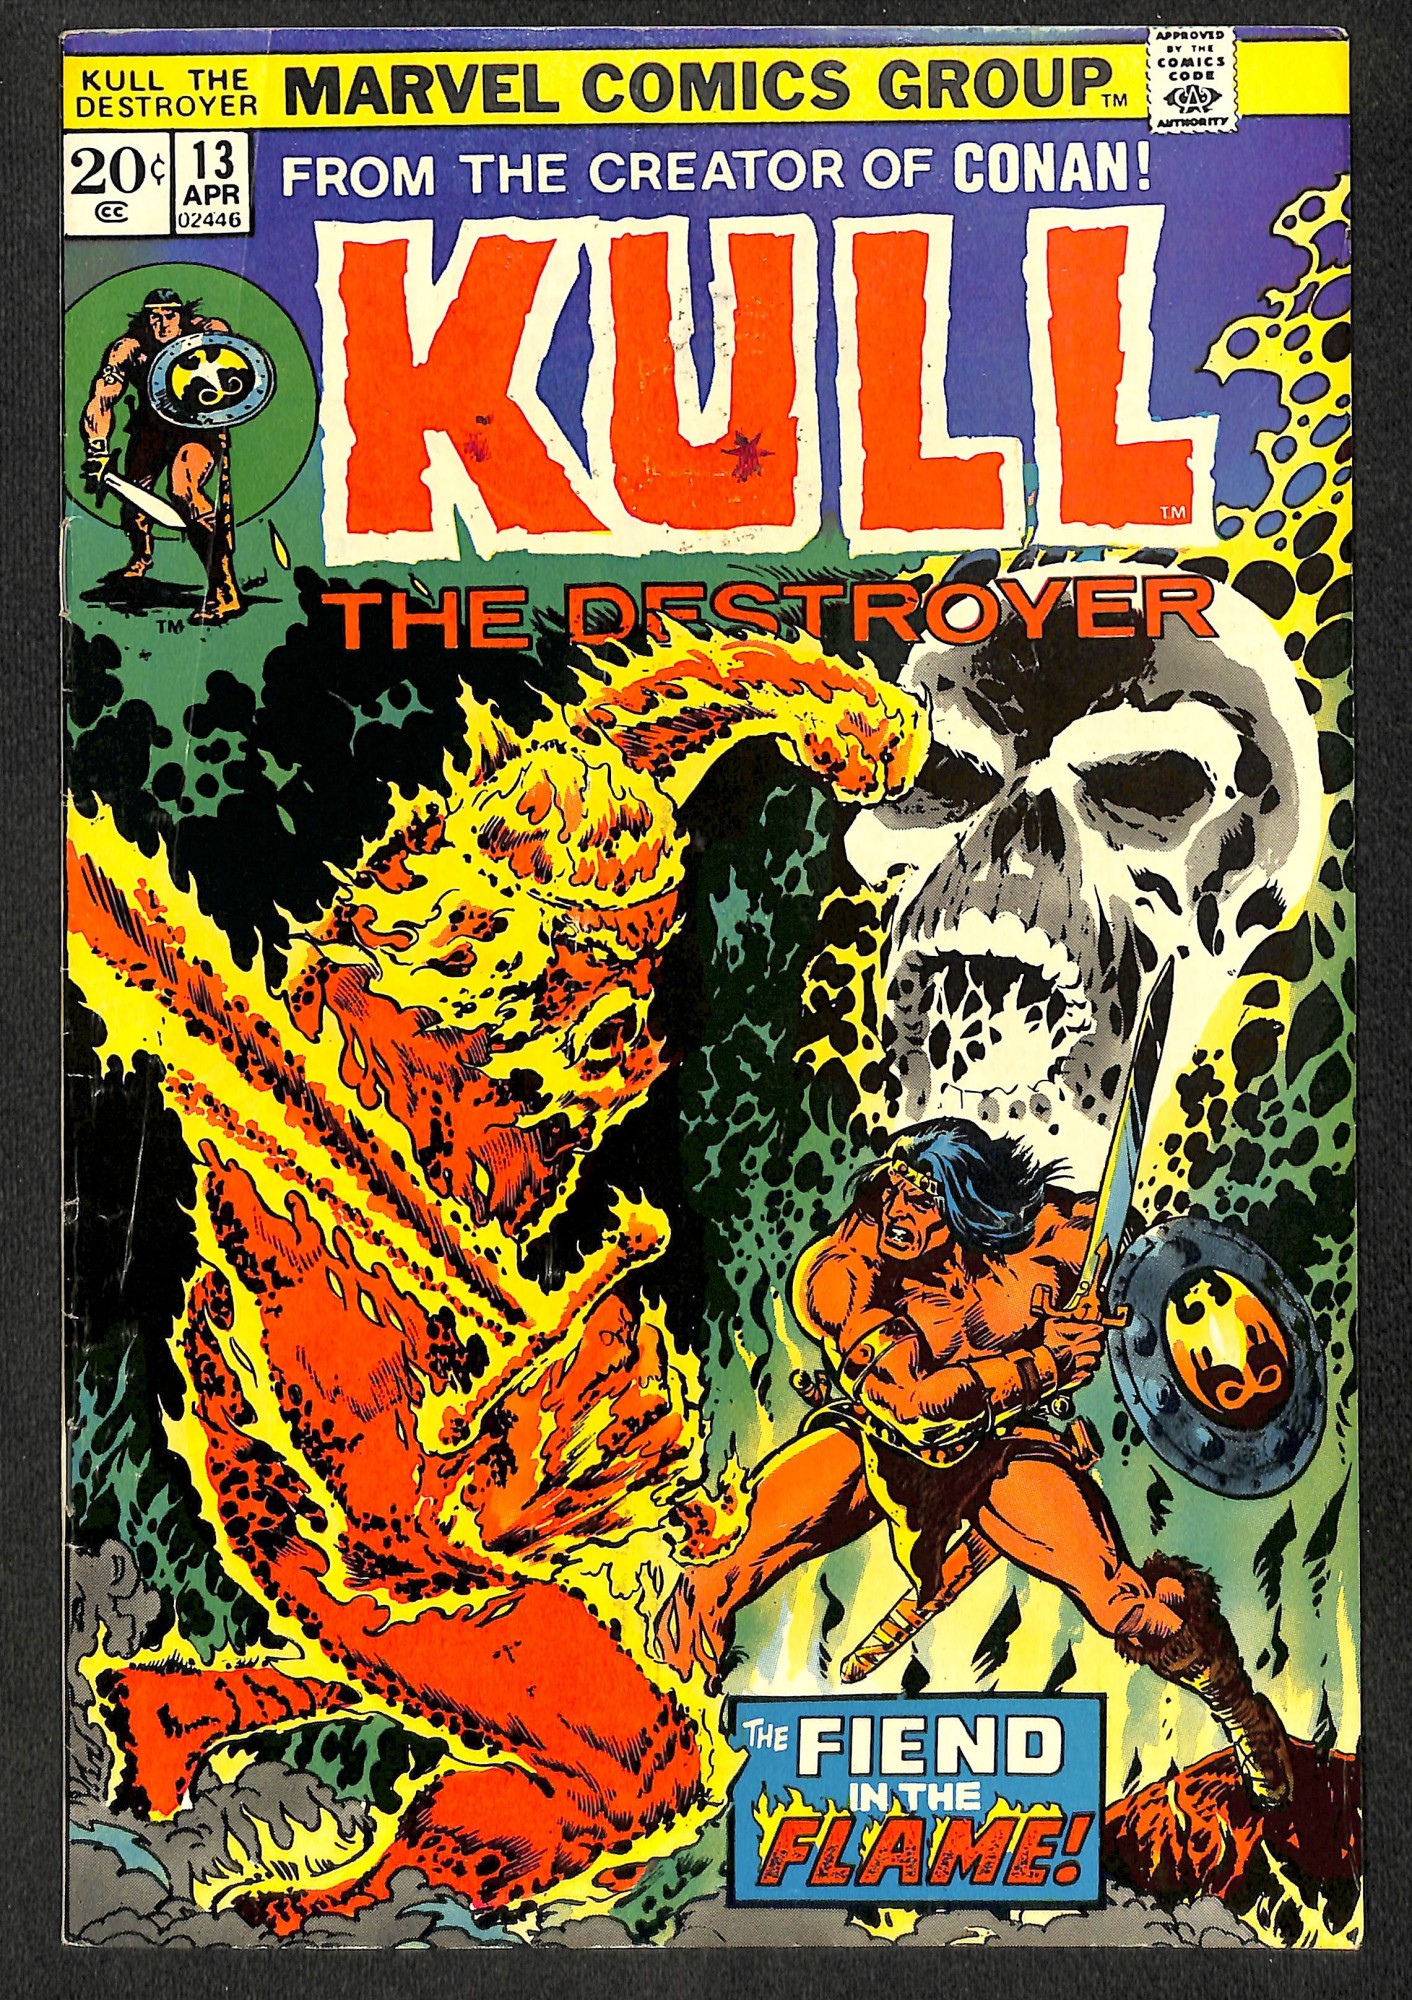 Kull the Destroyer #13 (1974) | Comic Books - Bronze Age, Marvel / HipComic